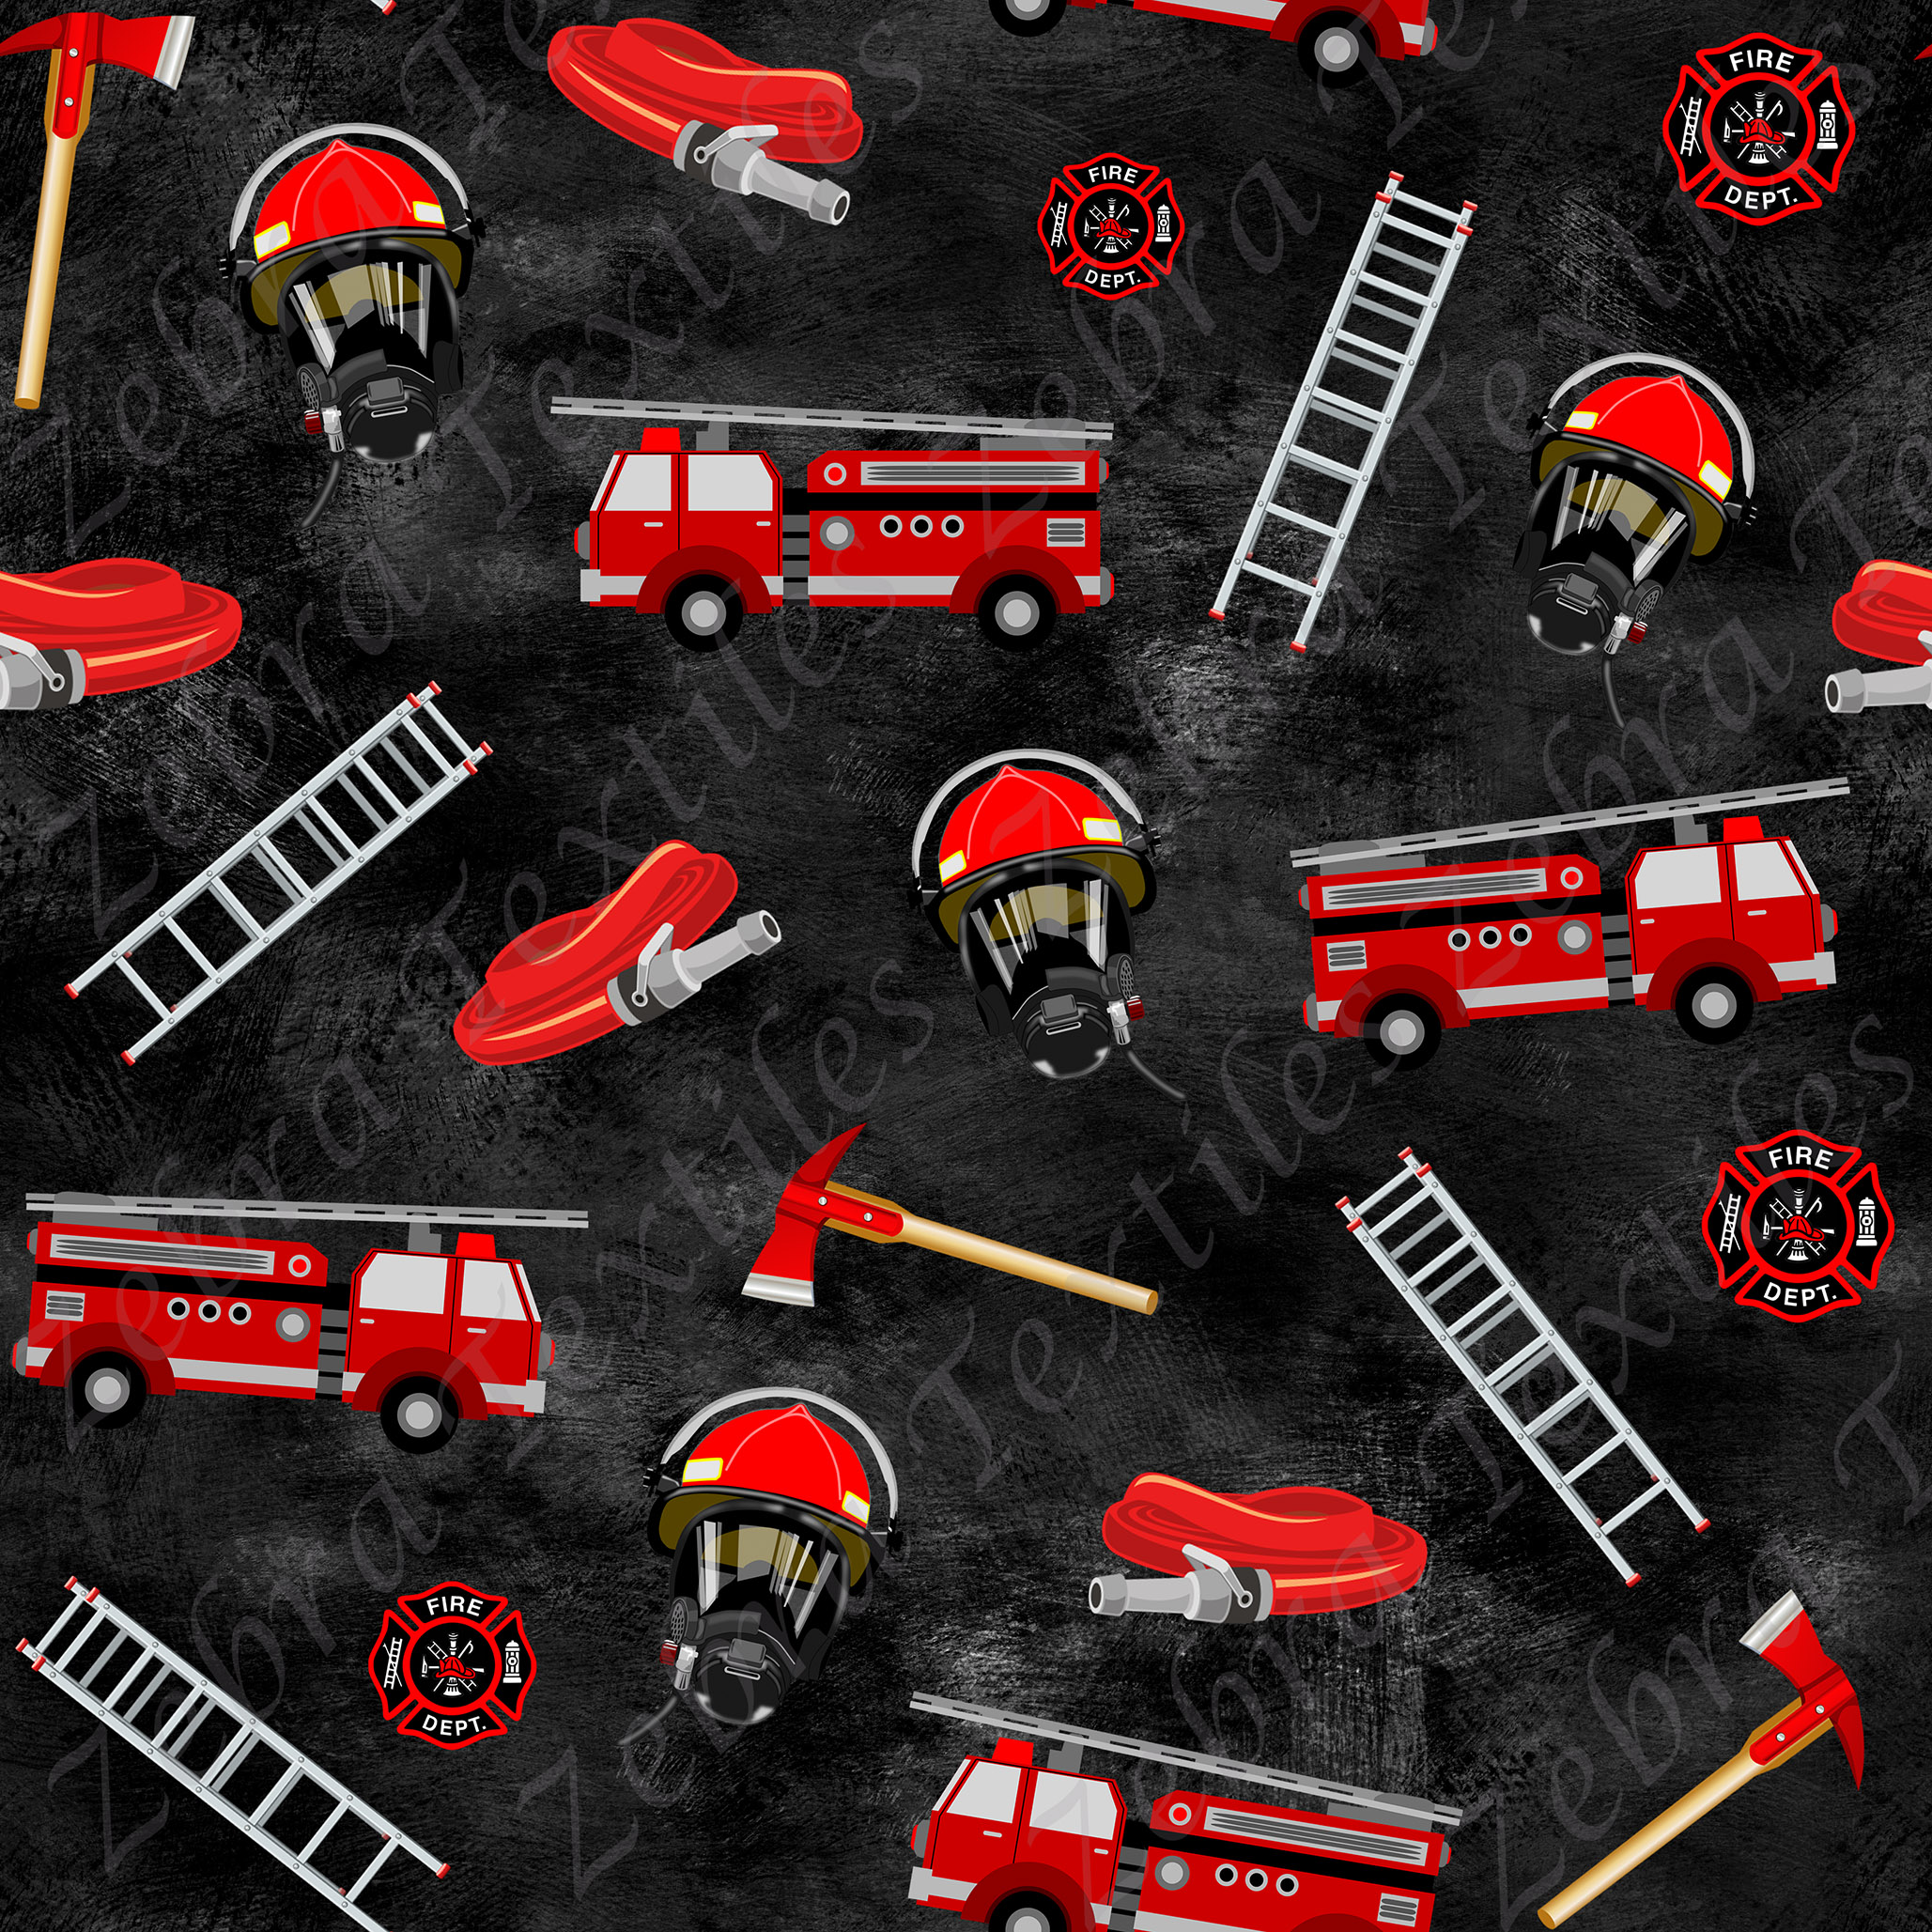 Camion pompier fond noir 2 * Exclusif * - Zebra textiles